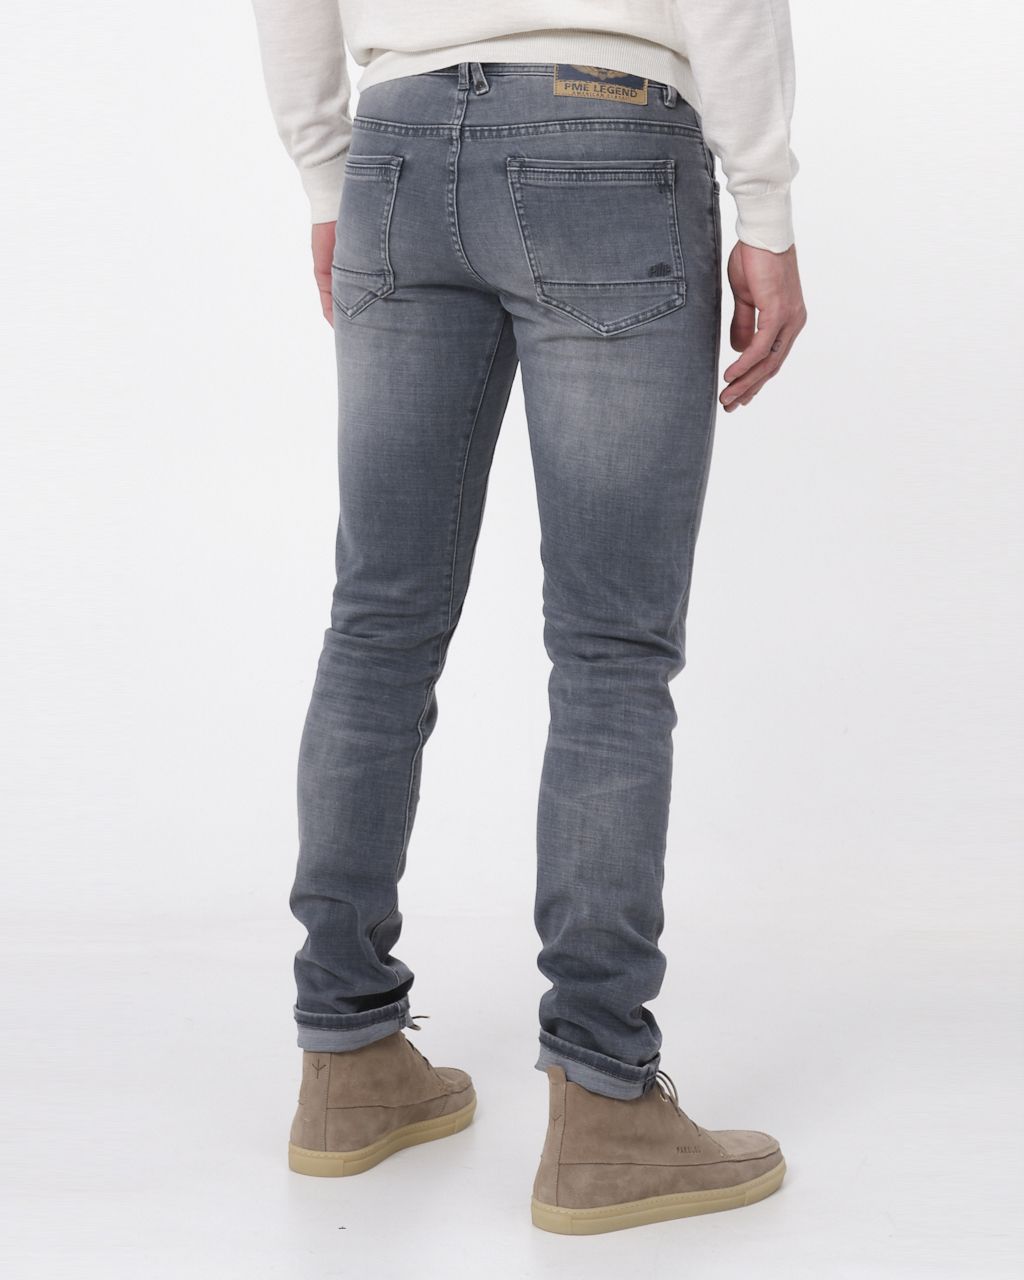 PME Legend Tailwheel Jeans Grijs 072460-001-29/30